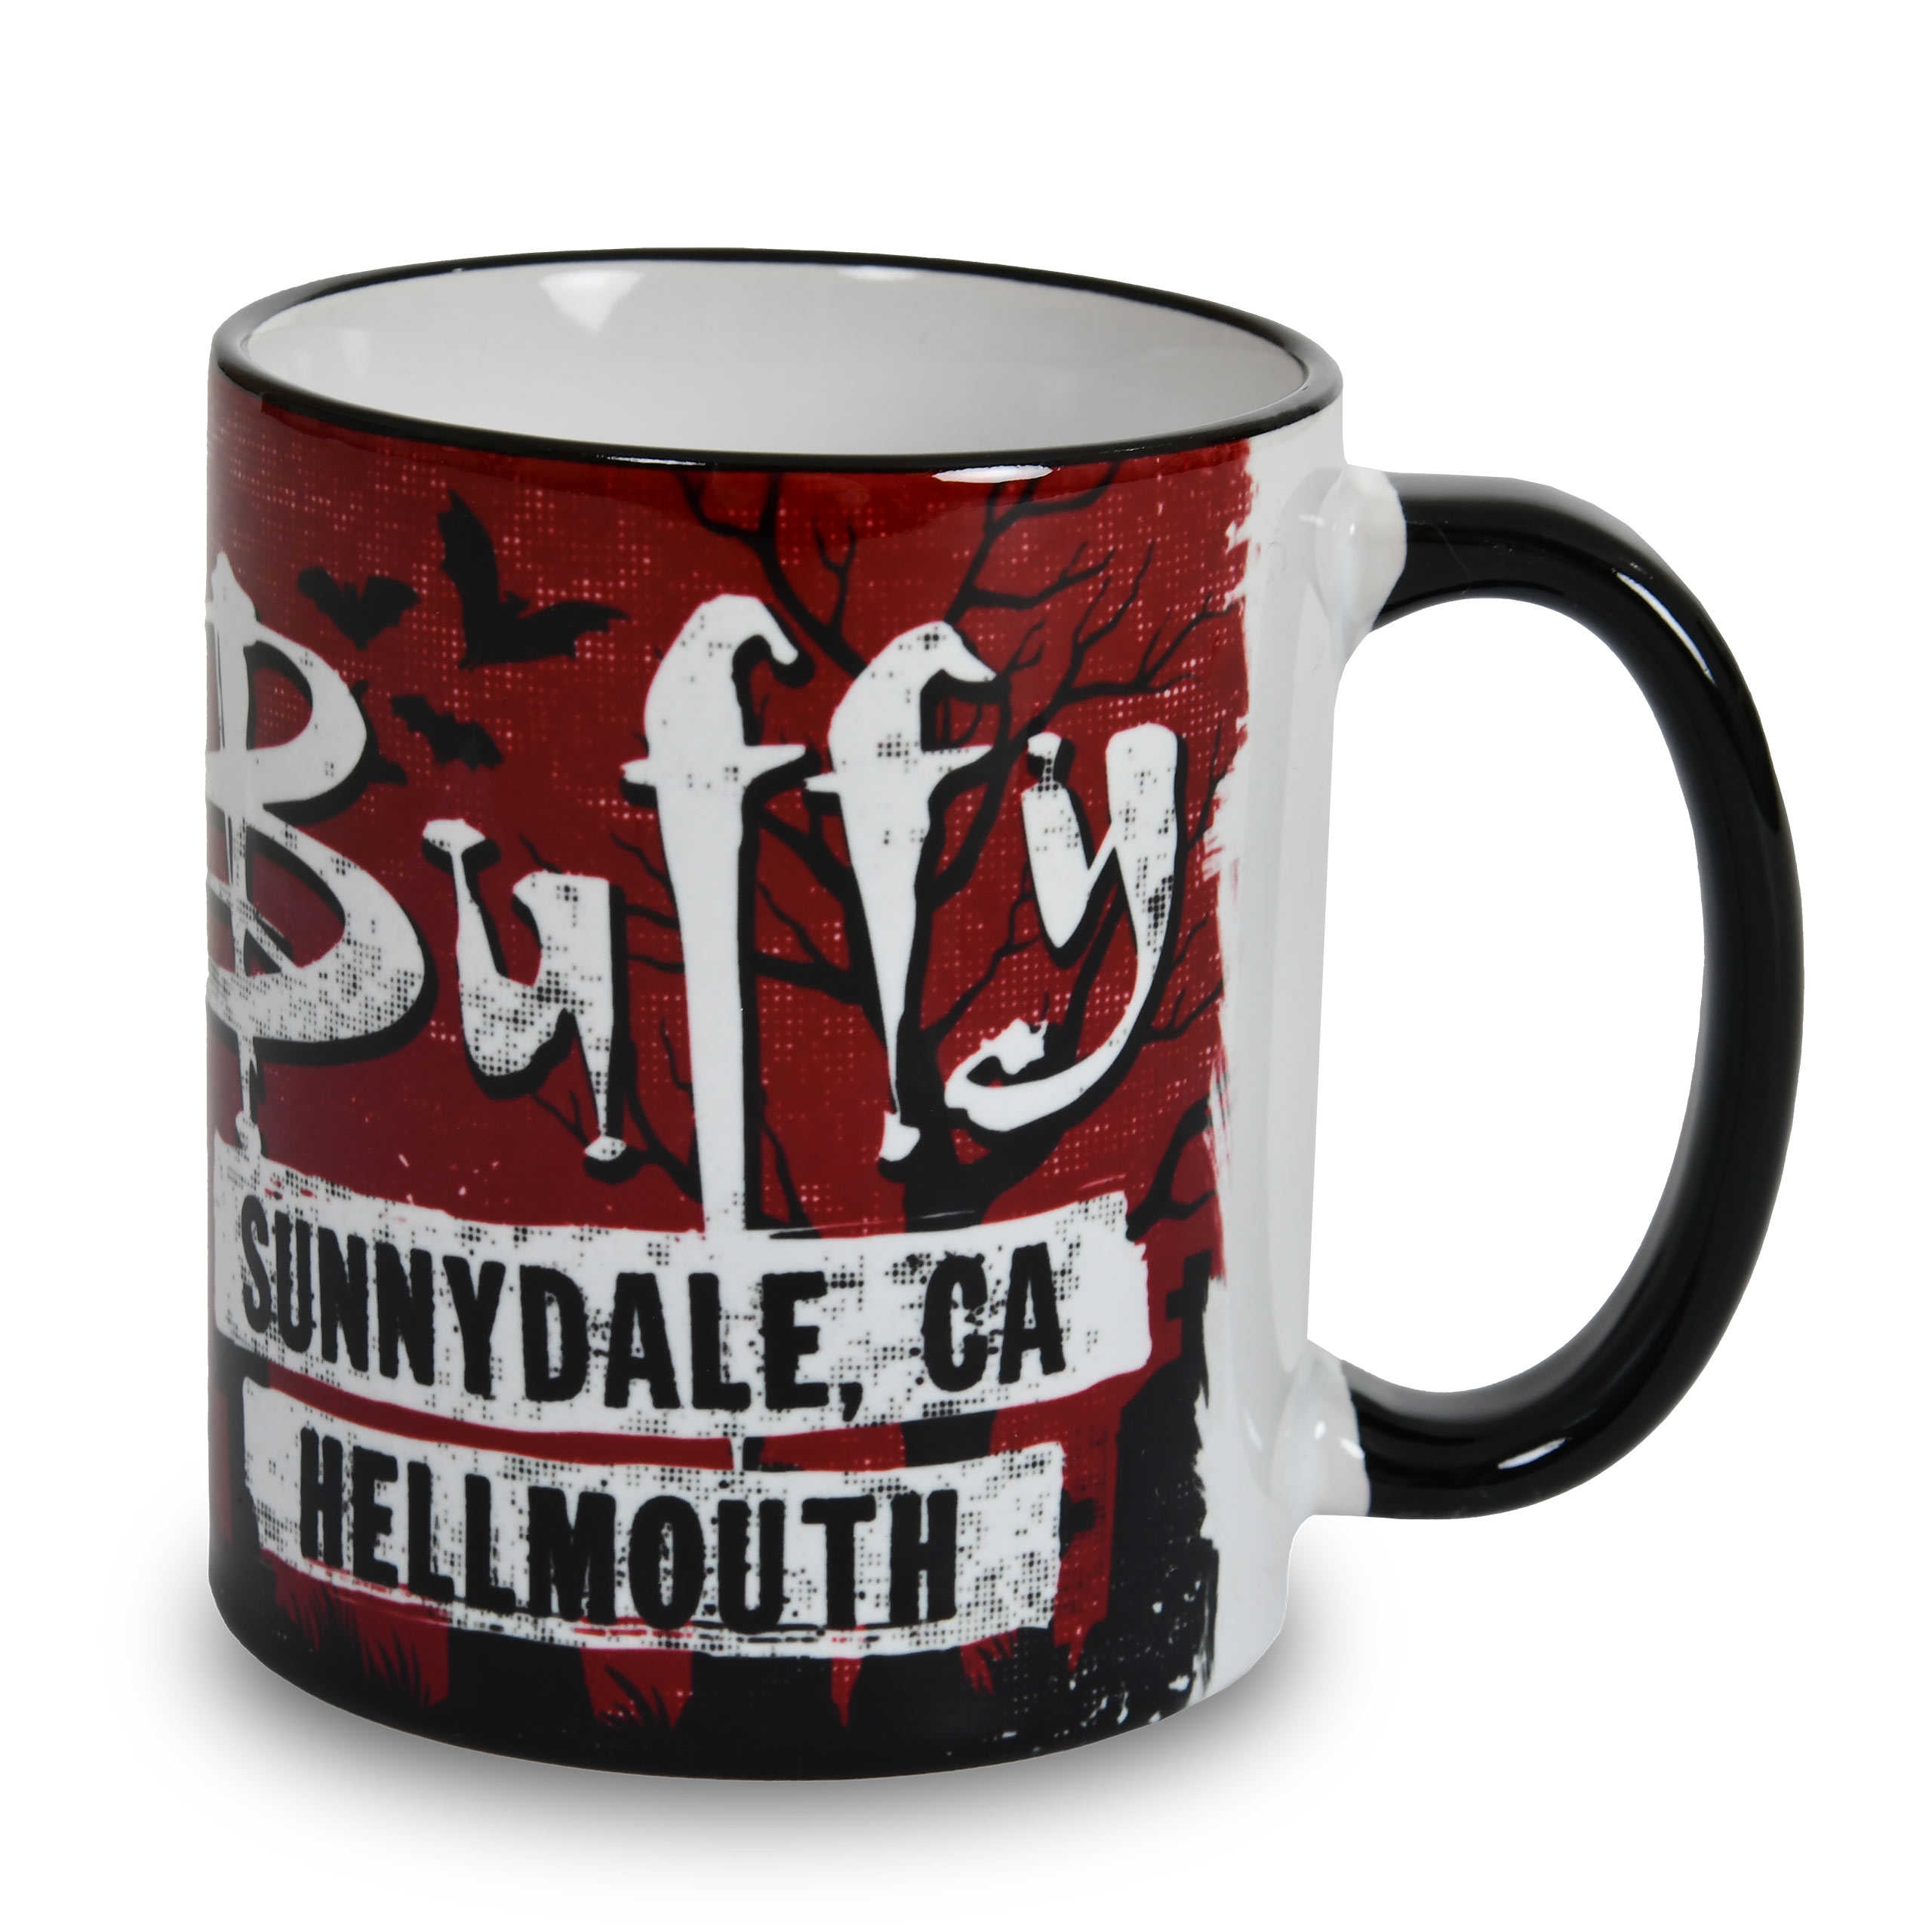 Vampire slayer mug for Buffy fans